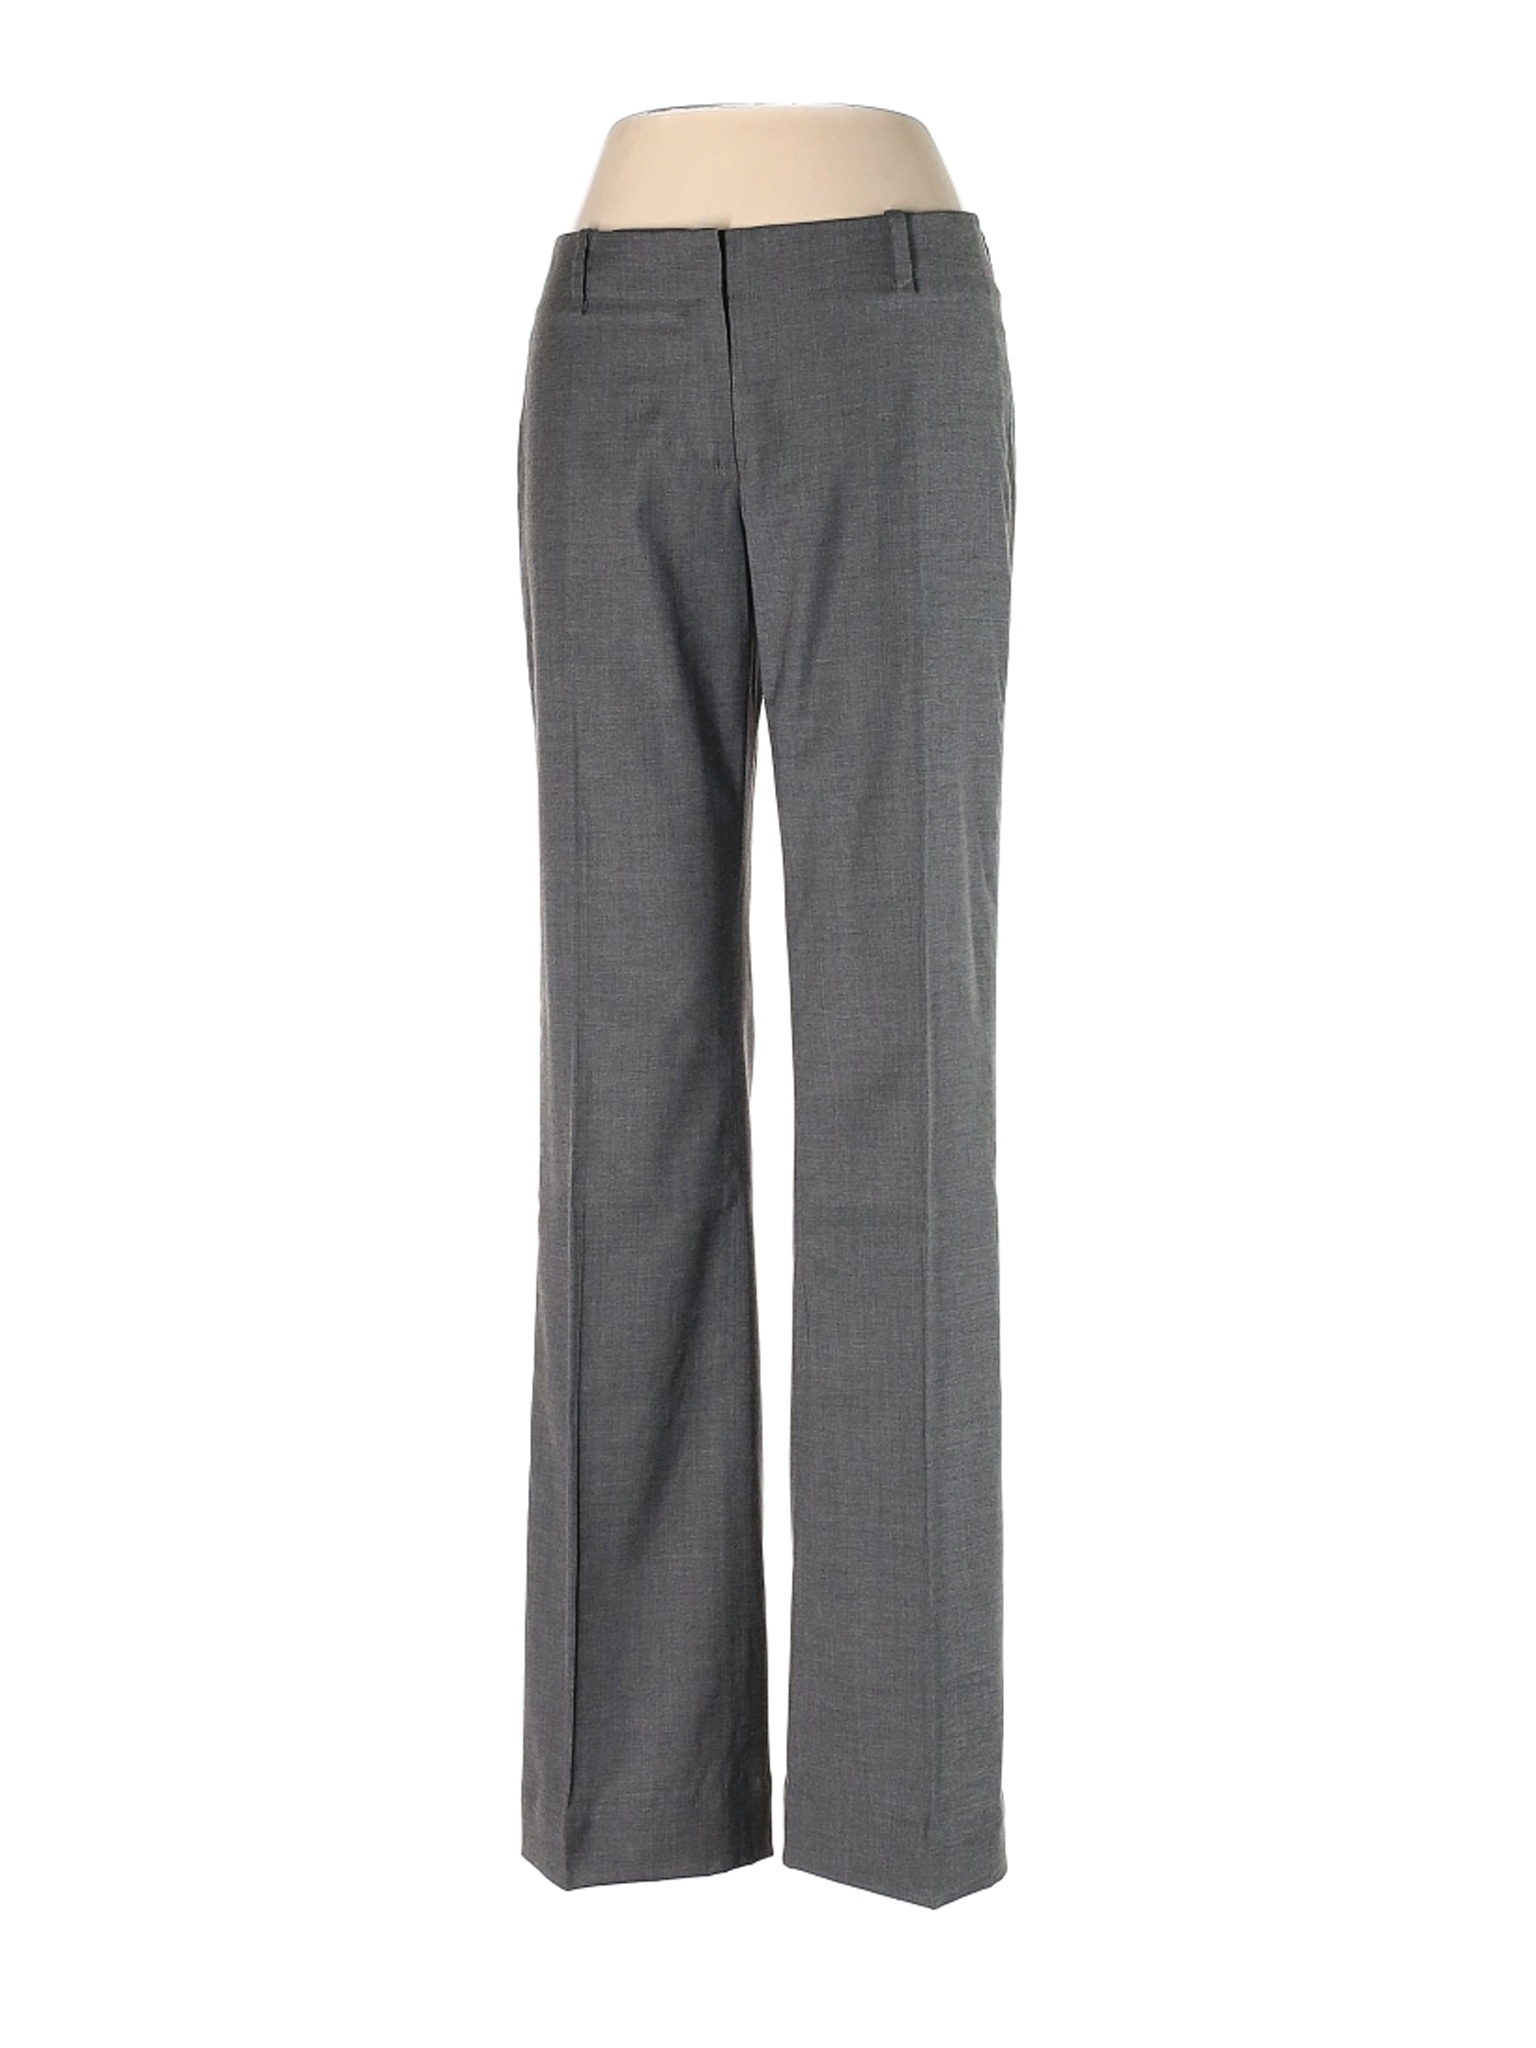 BOSS by HUGO BOSS Women Gray Wool Pants 2 | eBay